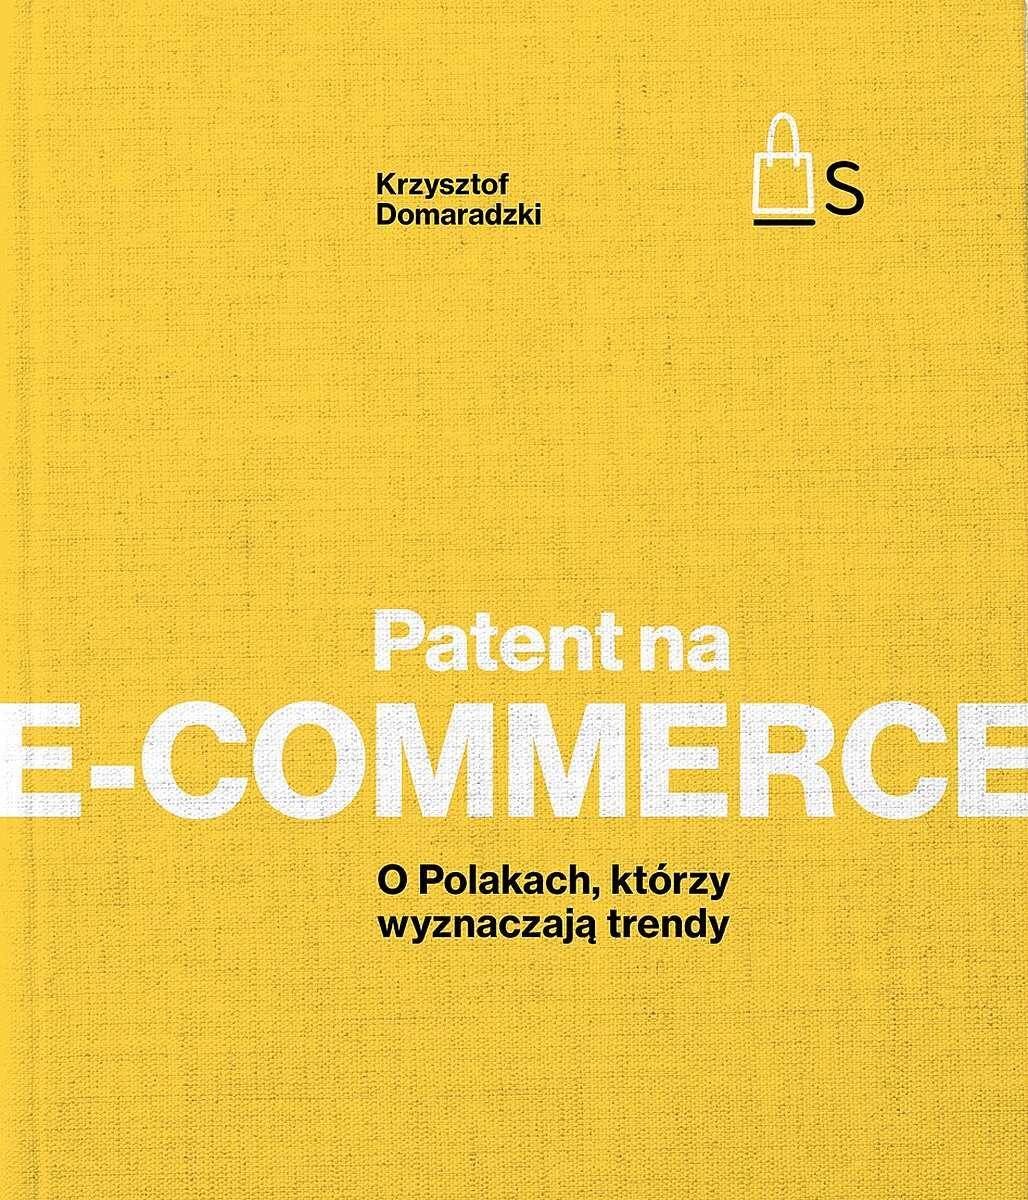 Patent na e-commerce. O Polakach, którzy wyznaczają trendy